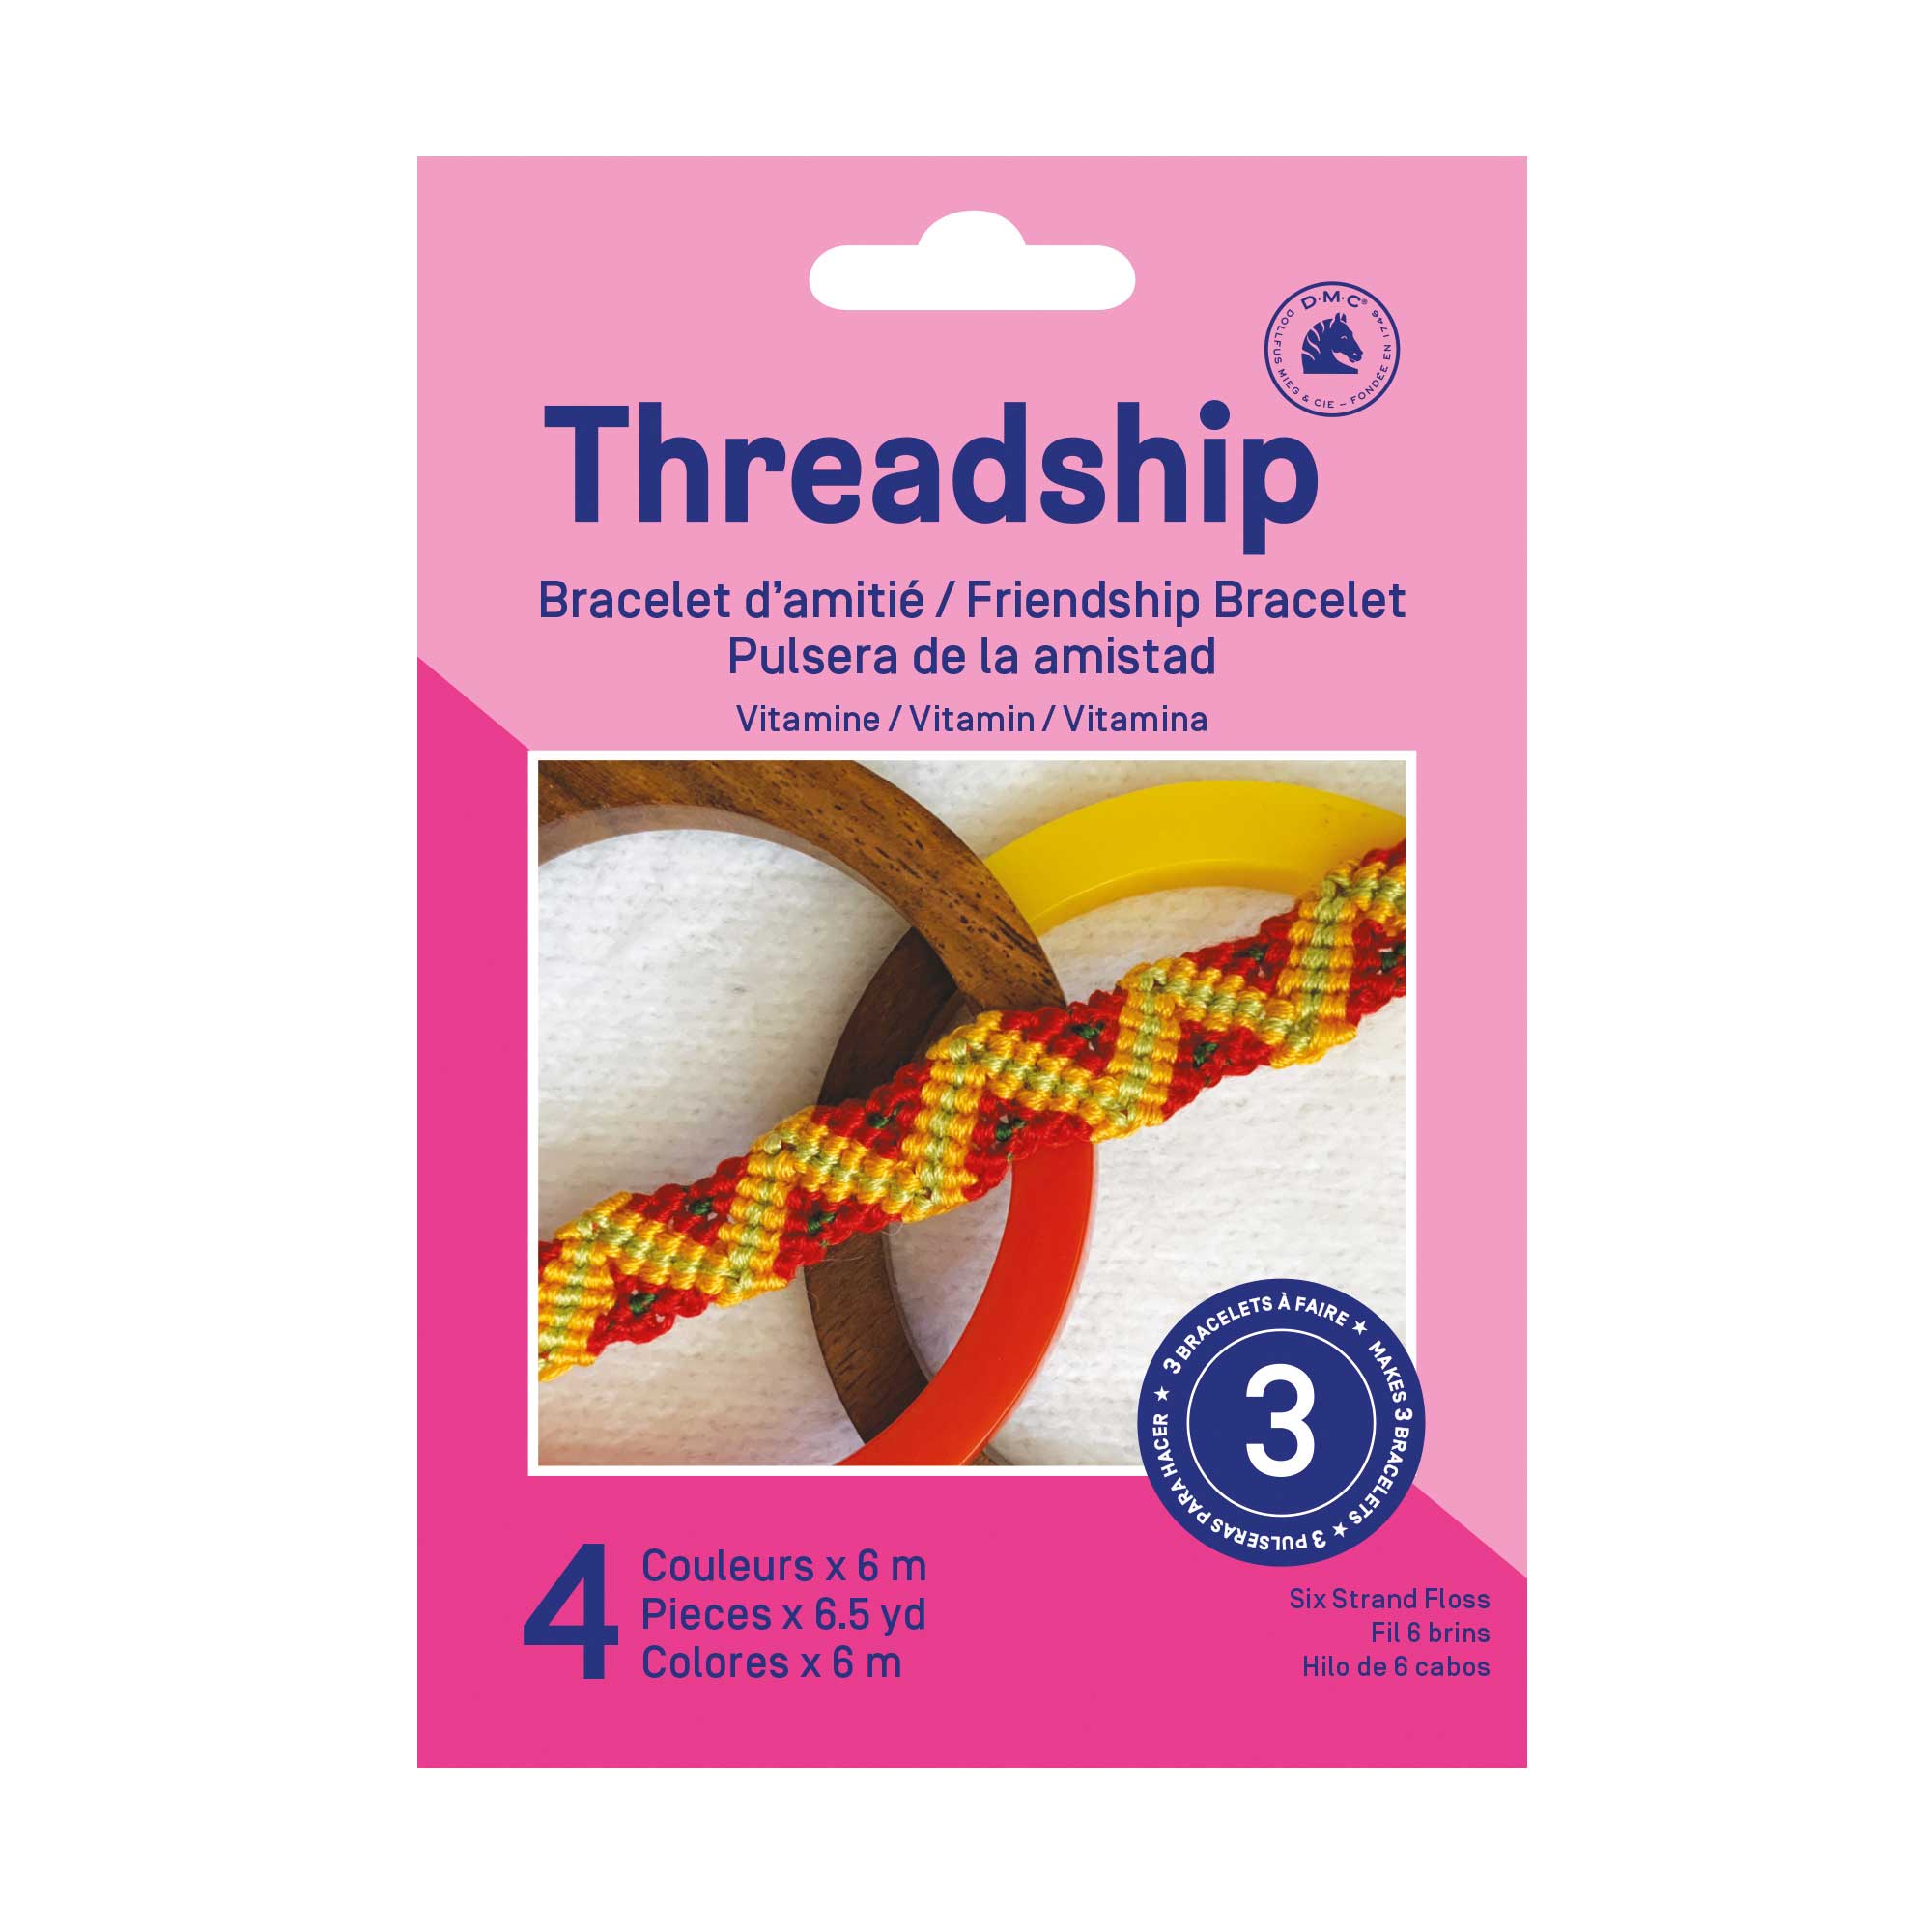 Threadship Friendship 3 Bracelet Starter Kit Vitamin 4 Colours